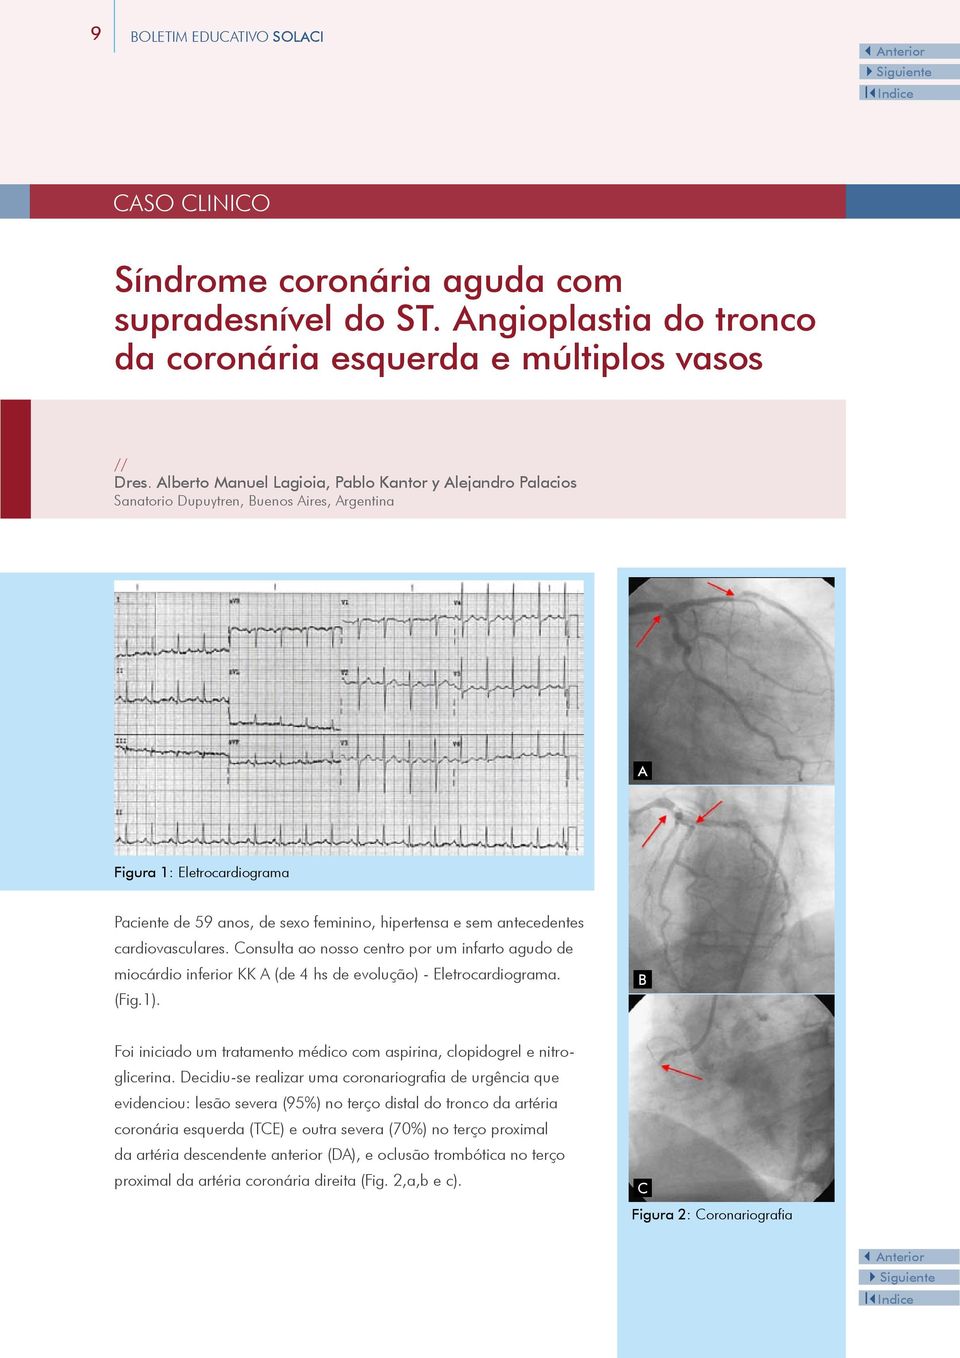 antecedentes cardiovasculares. Consulta ao nosso centro por um infarto agudo de miocárdio inferior KK A (de 4 hs de evolução) - Eletrocardiograma. (Fig.1).